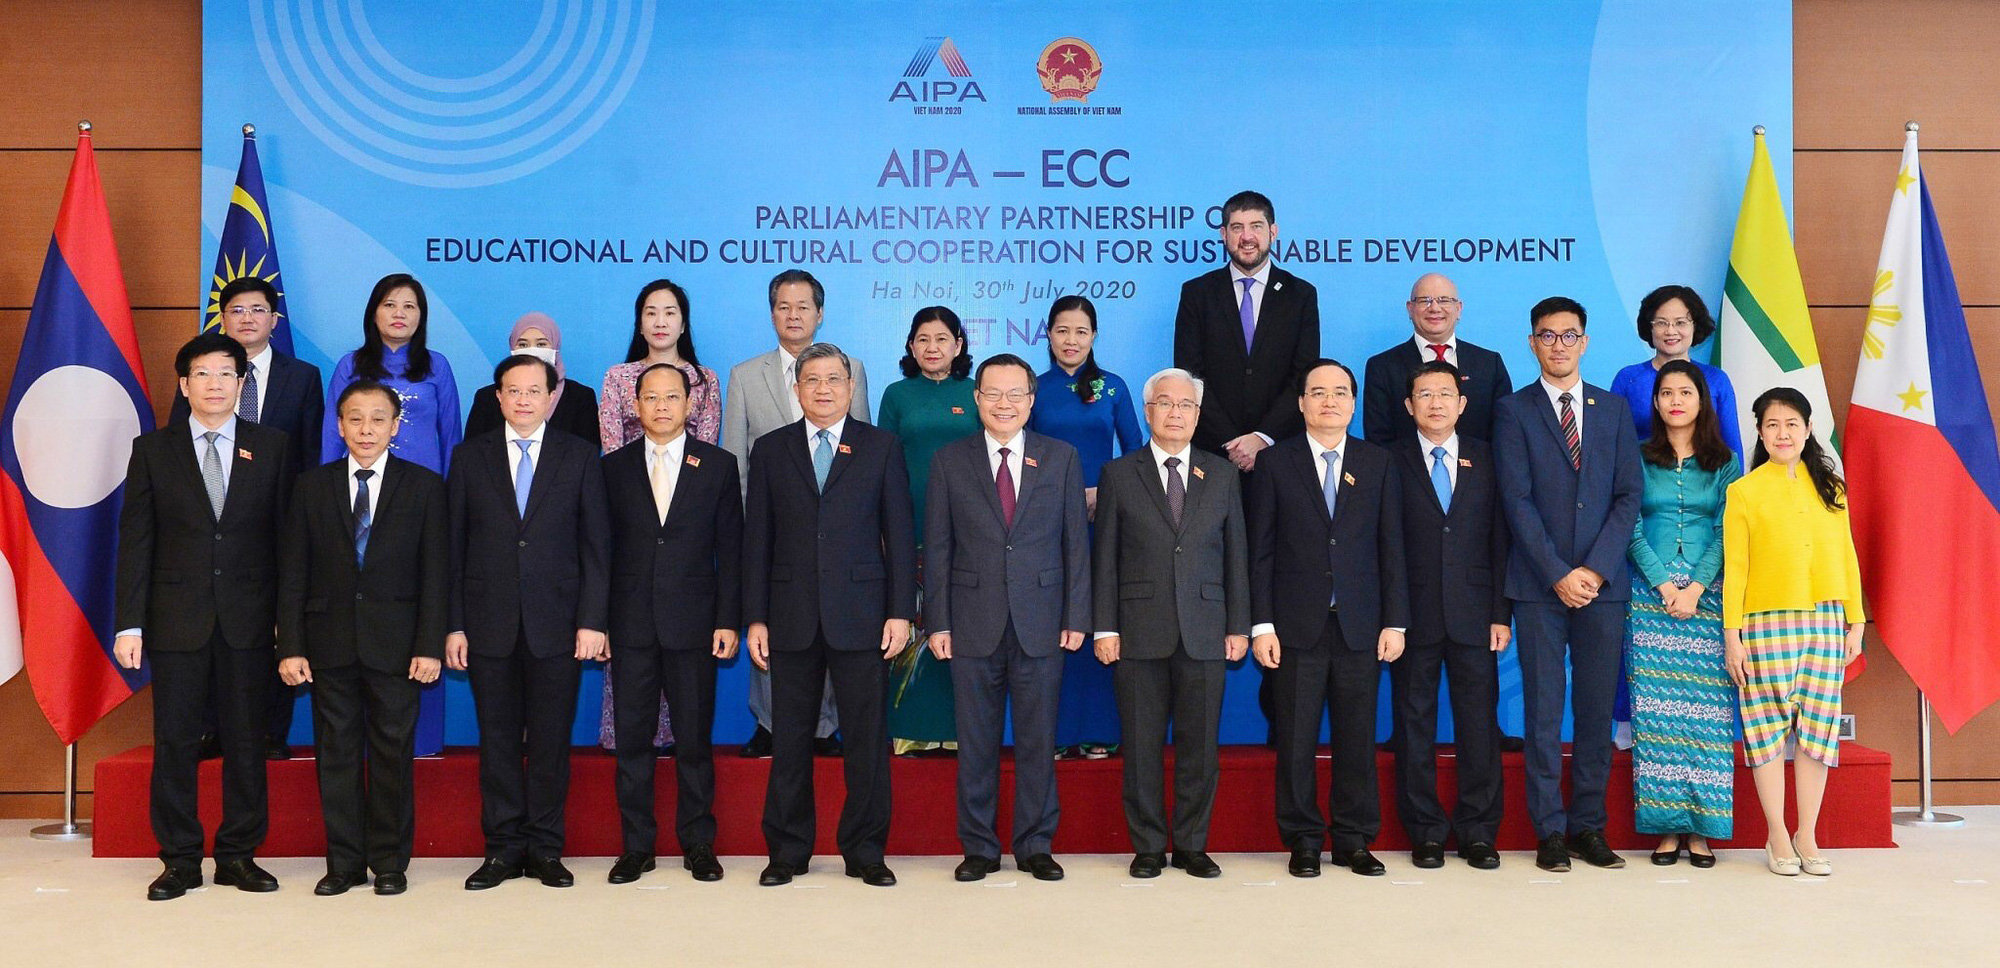 Thứ trưởng Tạ Quang Đông tham dự Hội nghị quốc tế “Đối tác nghị viện về hợp tác văn hóa, giáo dục vì sự phát triển bền vững” - Ảnh 6.